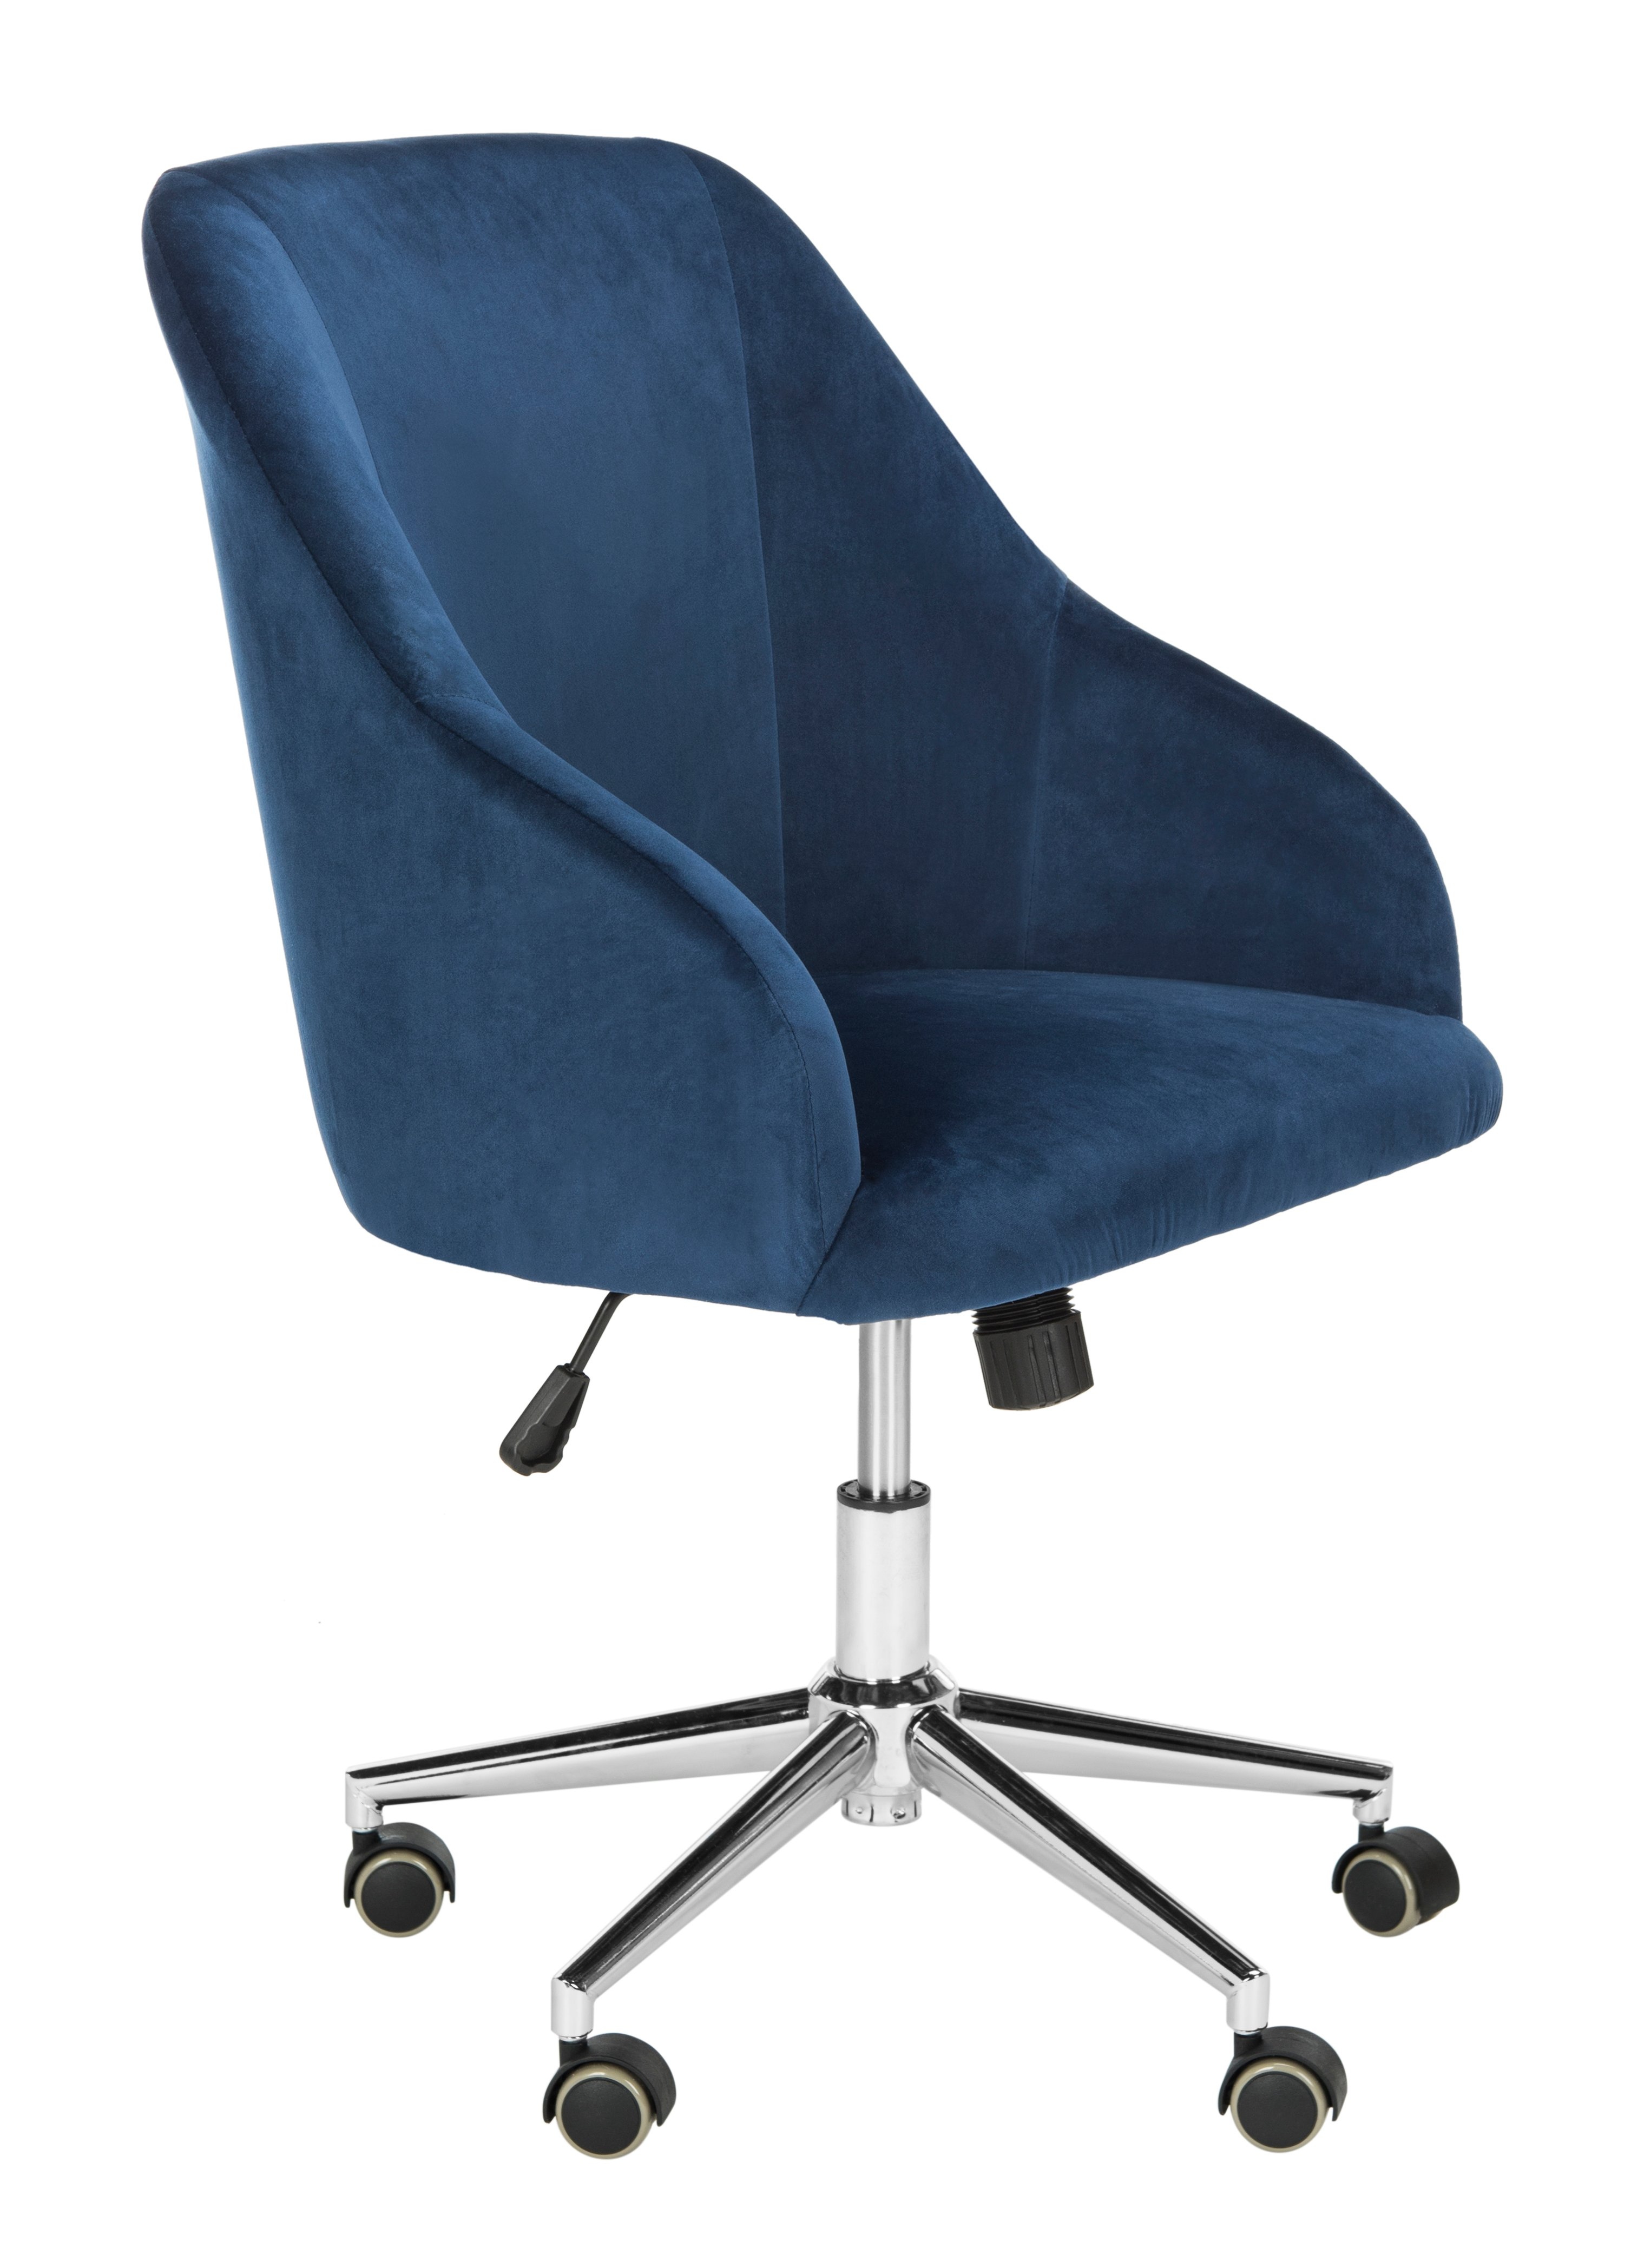 Adrienne Velvet Chrome Leg Swivel Office Chair - Navy/Chrome - Safavieh - Image 1